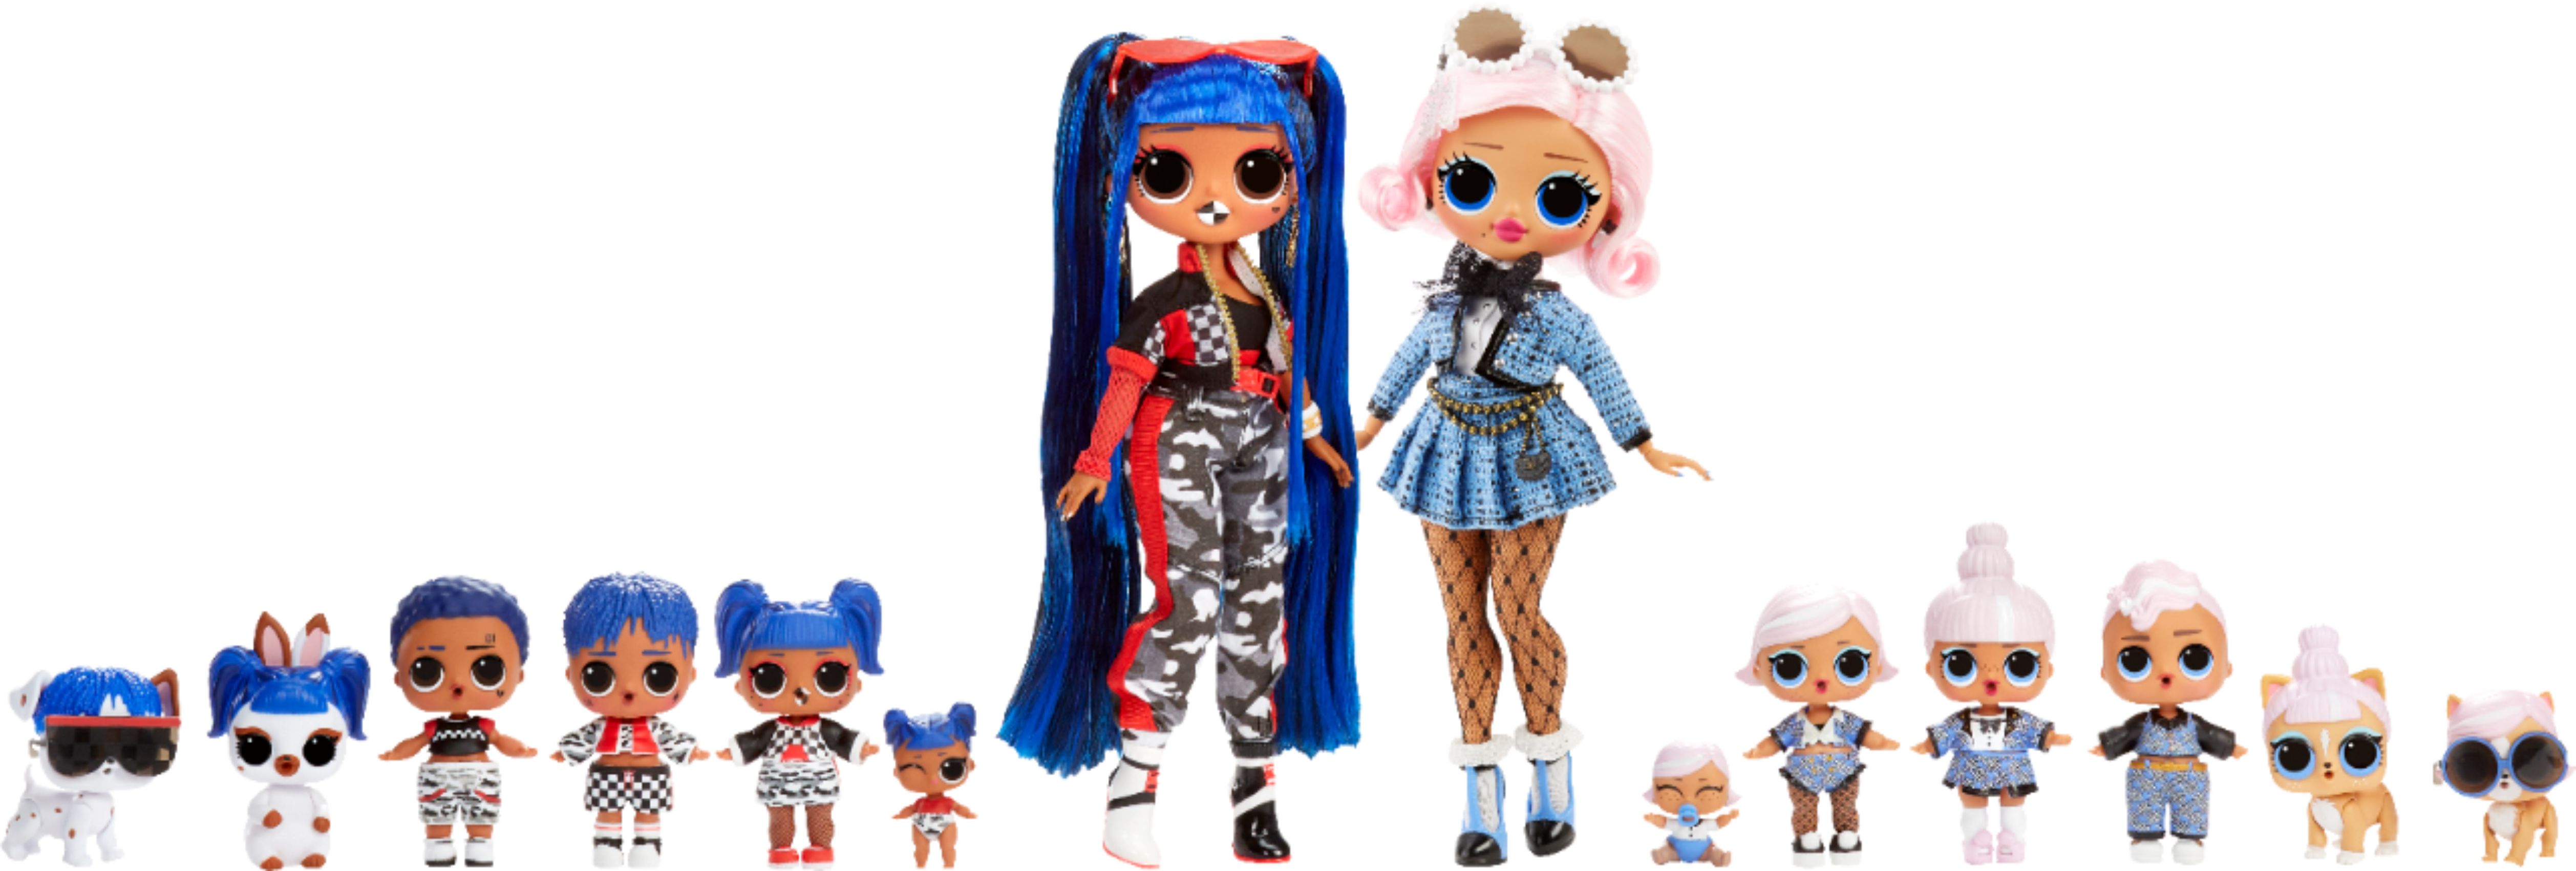 order lol dolls